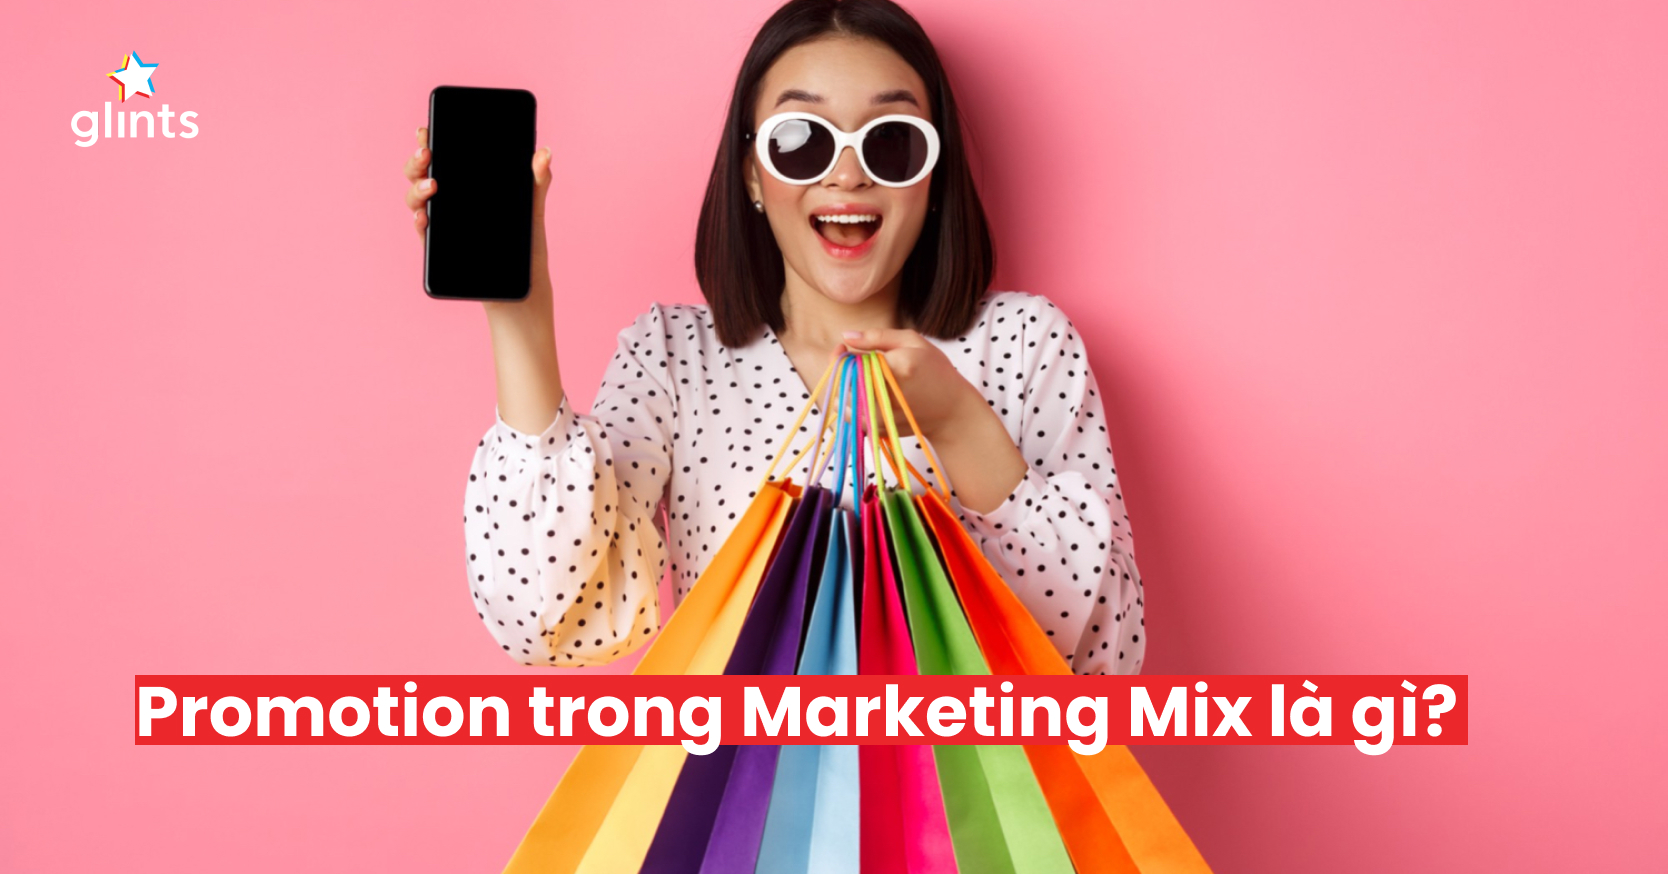 Promotion trong Marketing Mix - Tầm quan trọng của quảng bá, truyền thông